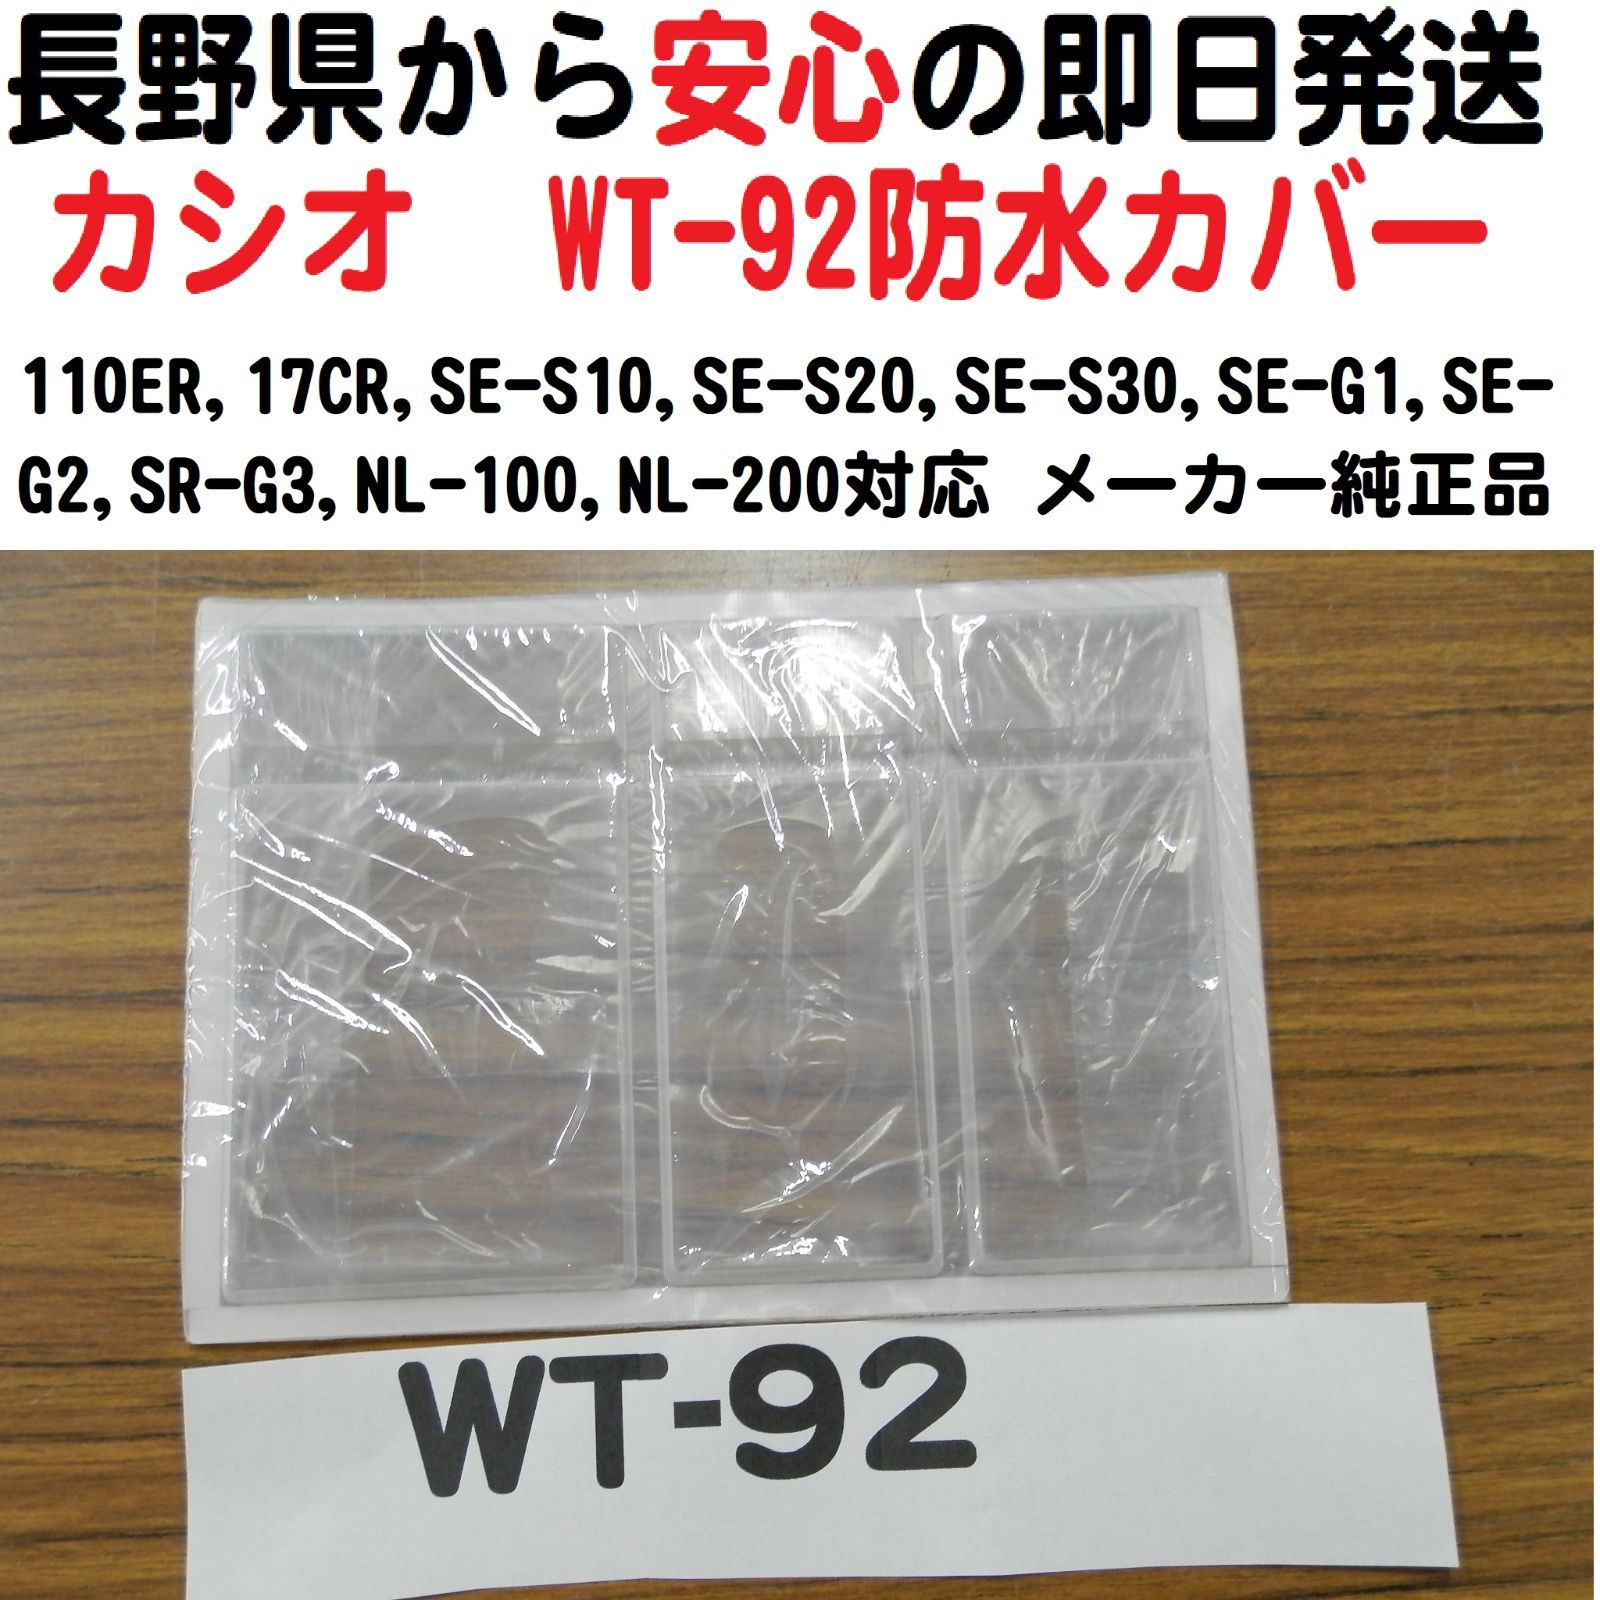 6/29 カシオ レジスター 防水カバー WT-92新品 - レジスター専門店0263